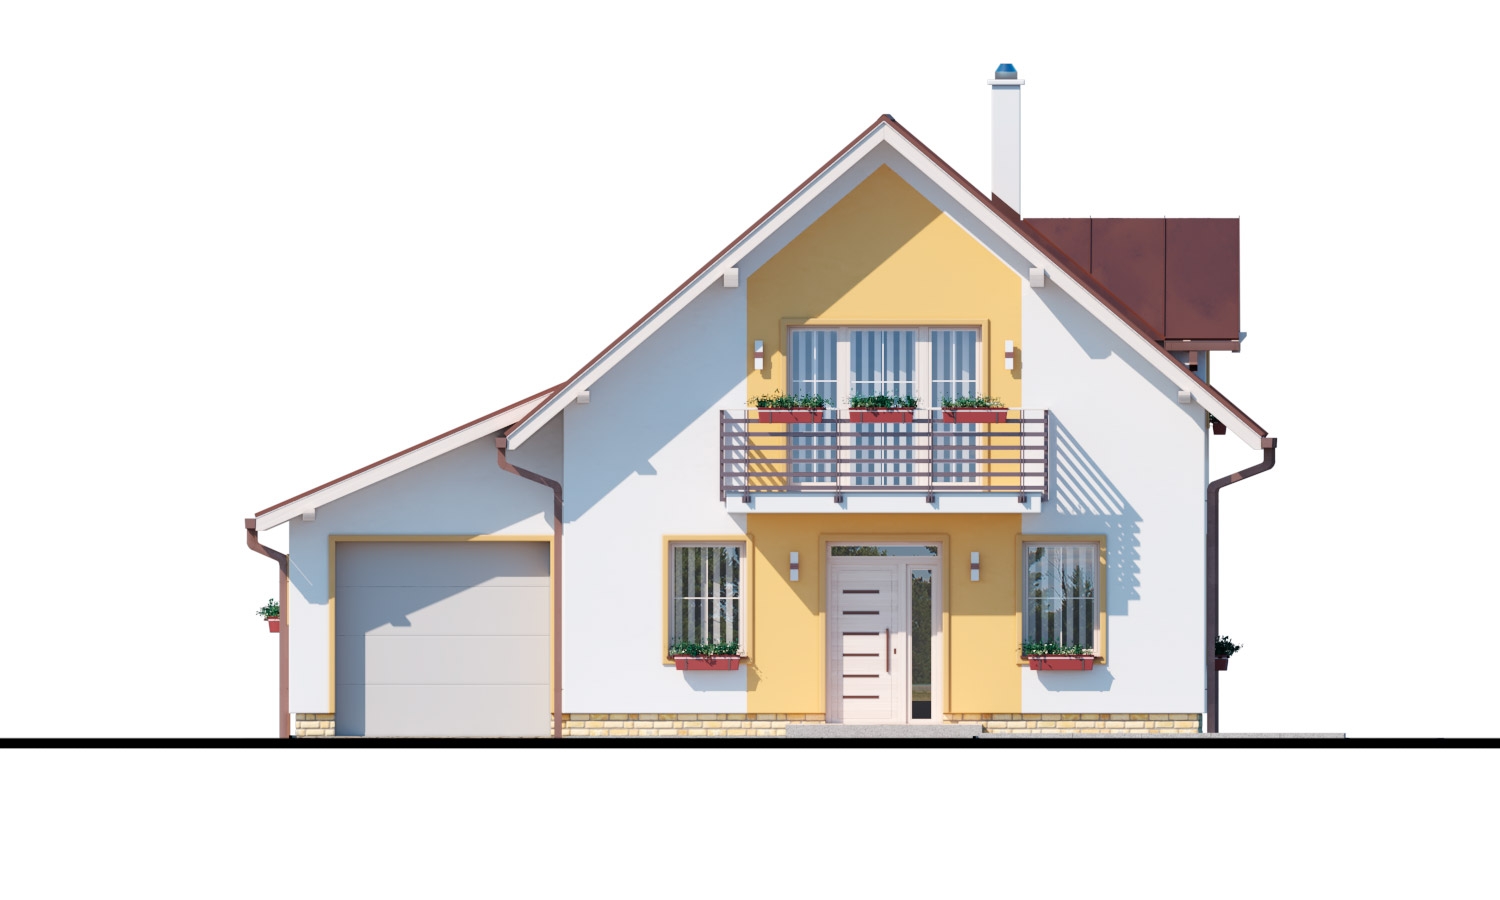 Pohľad 1. - Rodinný dům s přistavěnou garáží, pracovnou v přízemí, třemi pokoji na patře a krbem.